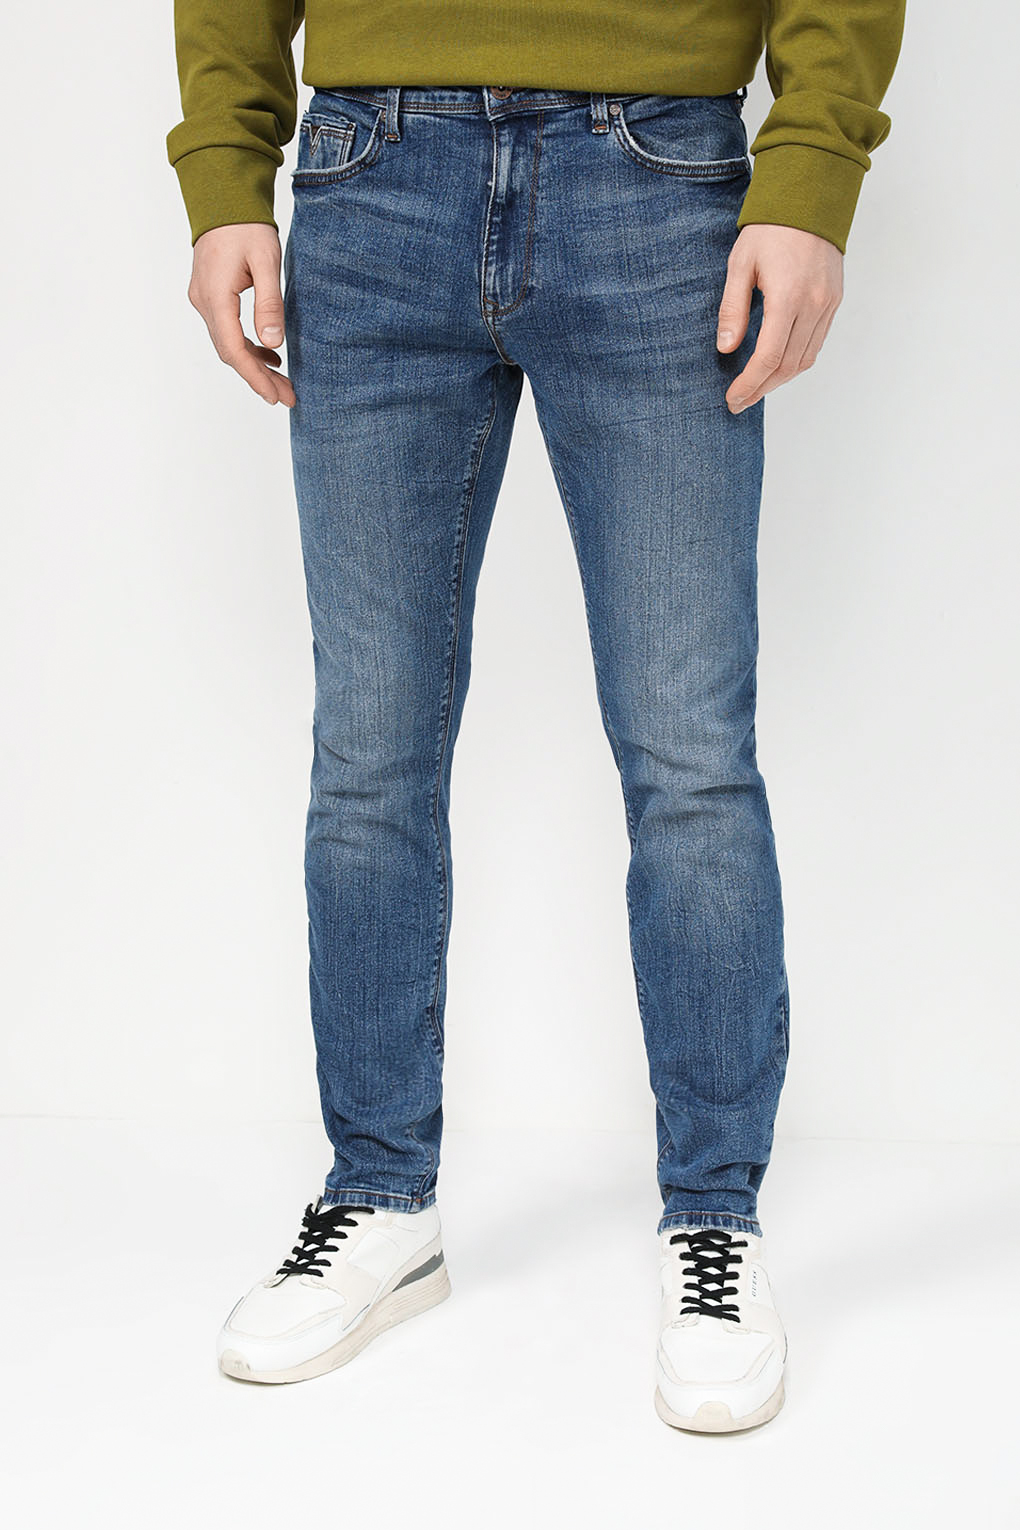 Мужские синие джинсы размер 31/32 от бренда Loft, артикул LF2034664.